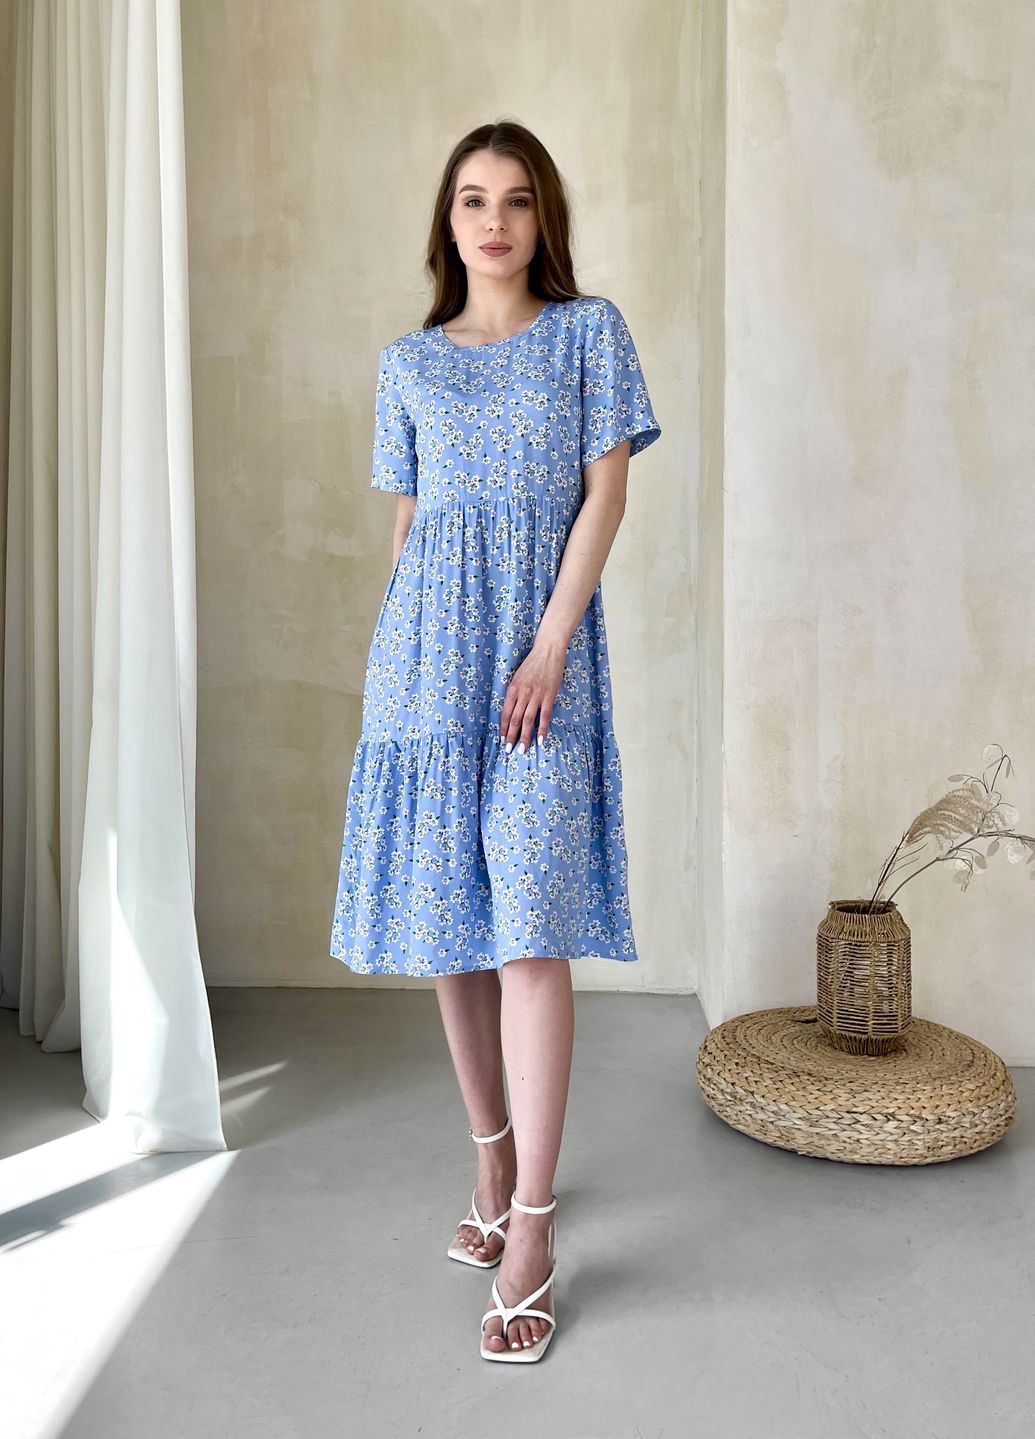 Купить Женское платье до колена с цветочным принтом и коротким рукавом голубое Merlini Ферро 700000262, размер 46-48 (L-XL) в интернет-магазине